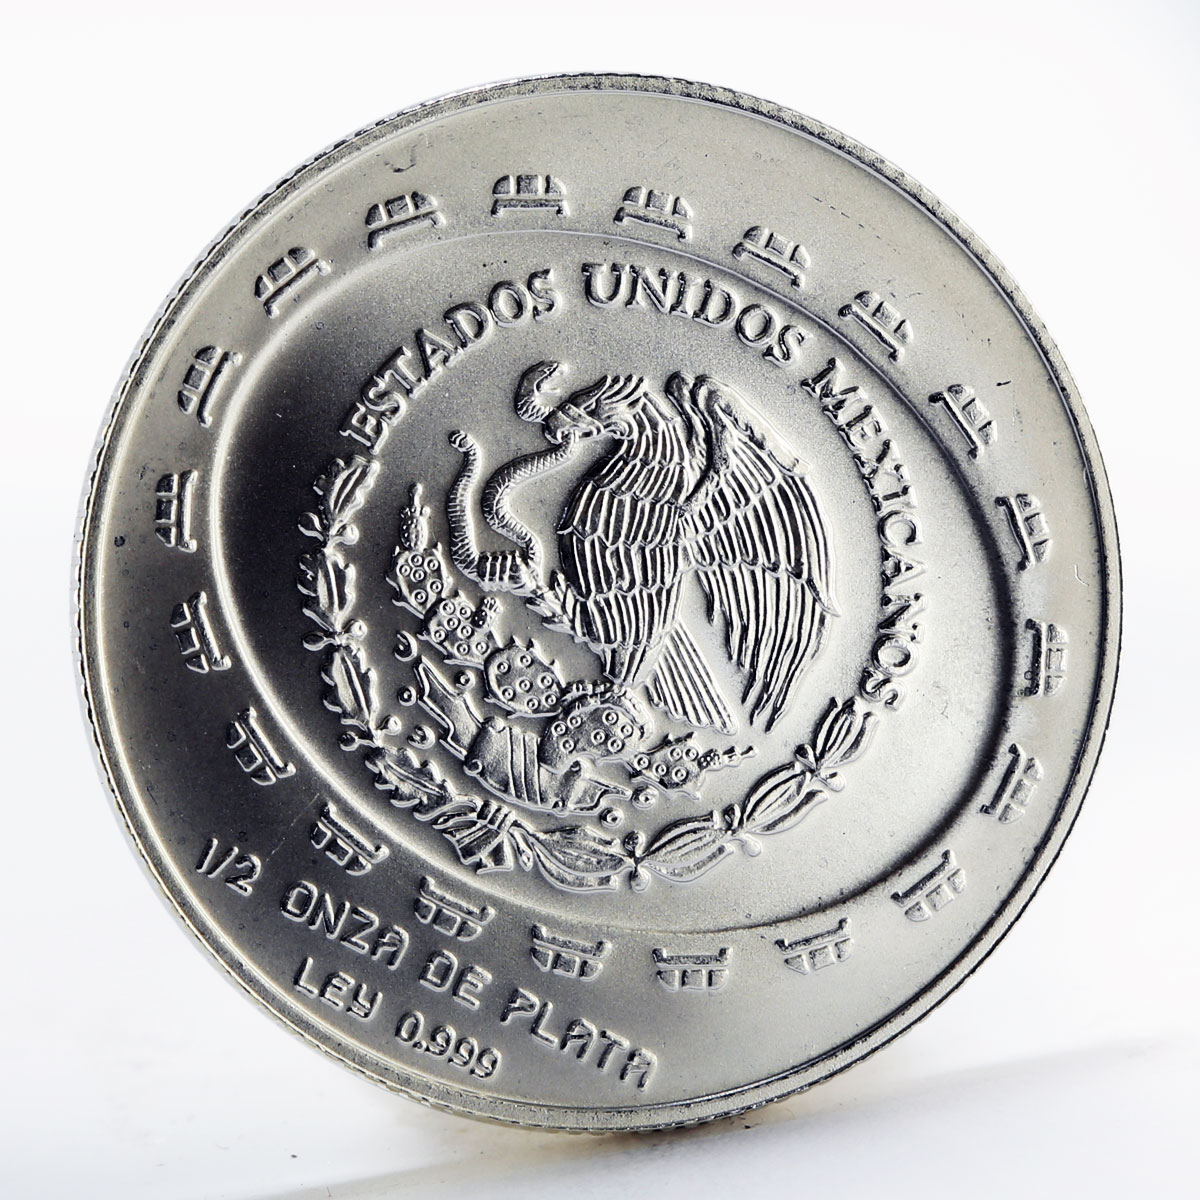 Mexico 2 pesos Disc of death silver coin 1998